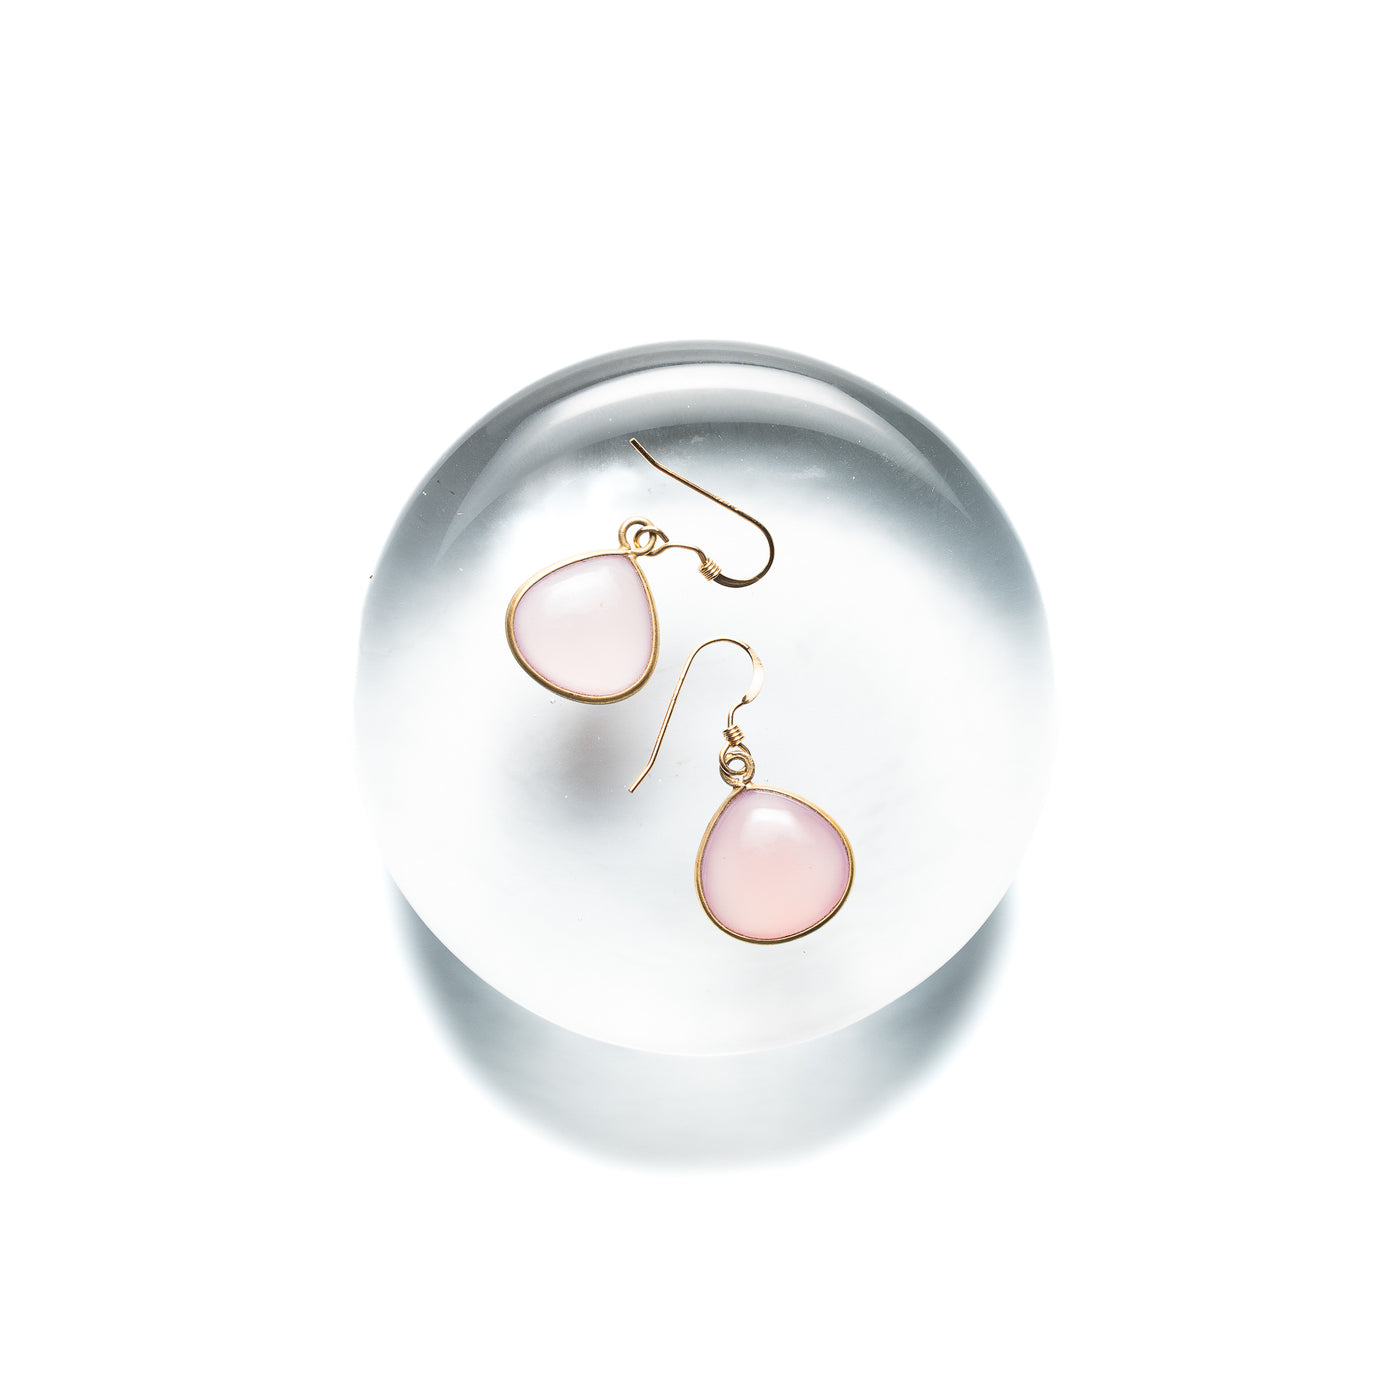 Pastel Pink Chalcedony Drop Earrings